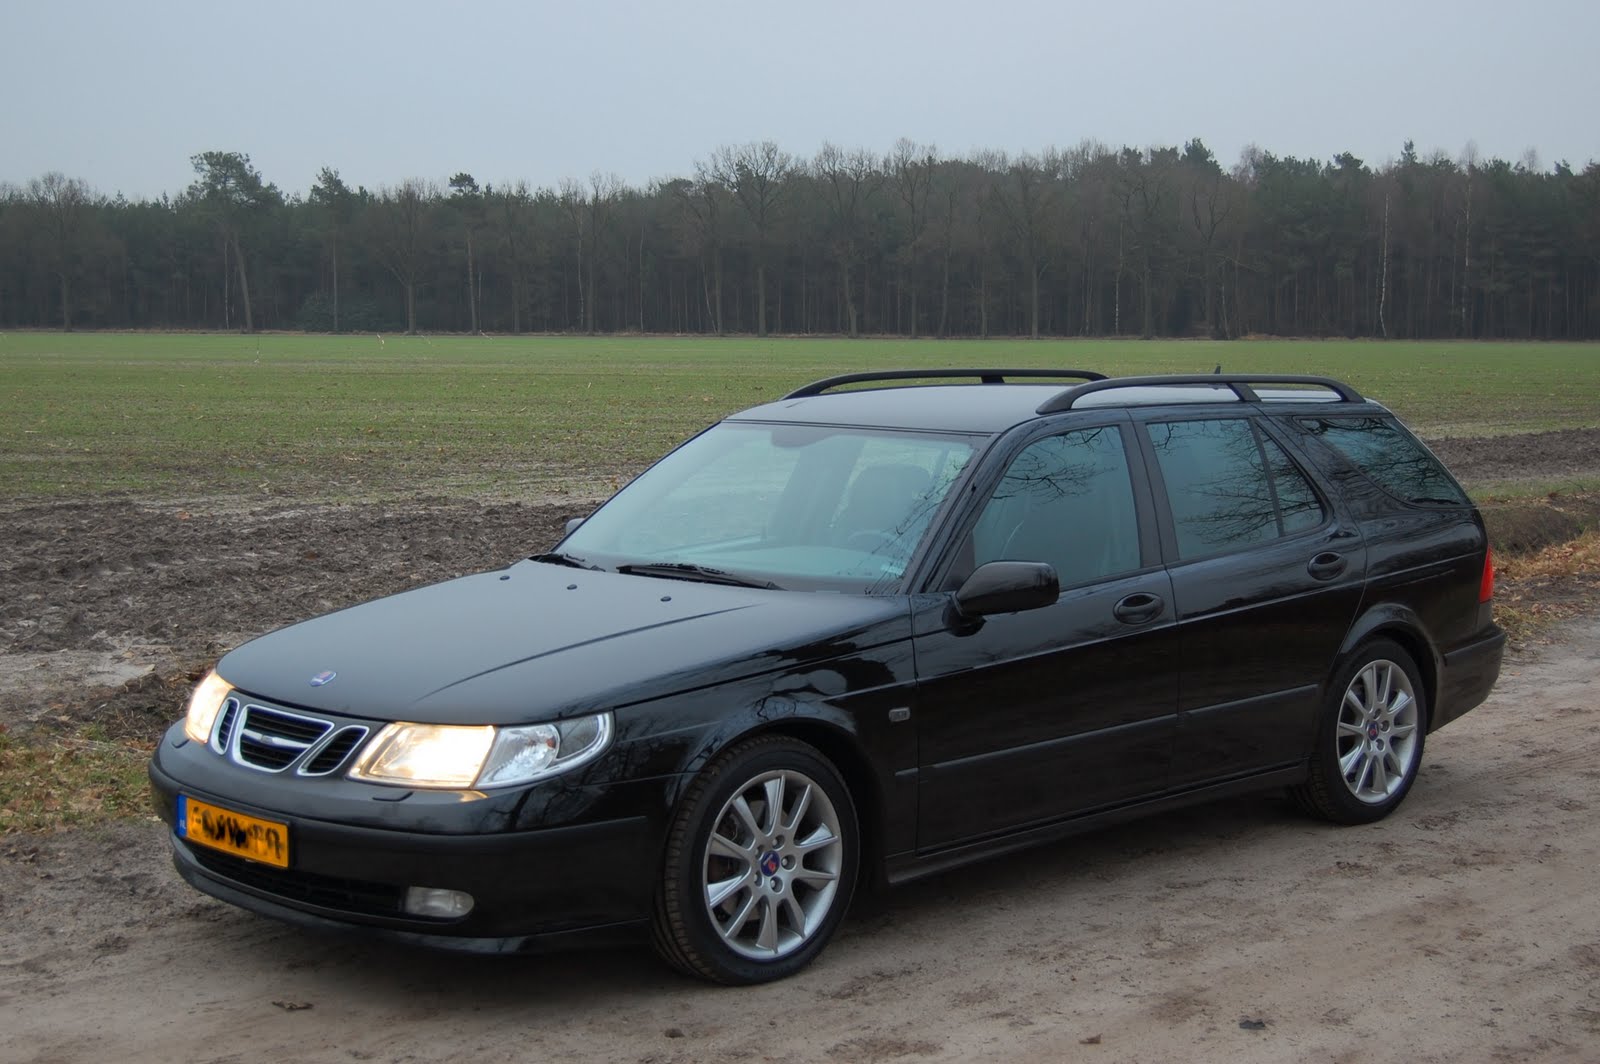 Saab Club Nederland - Modellen - Saab 9-5 (11)